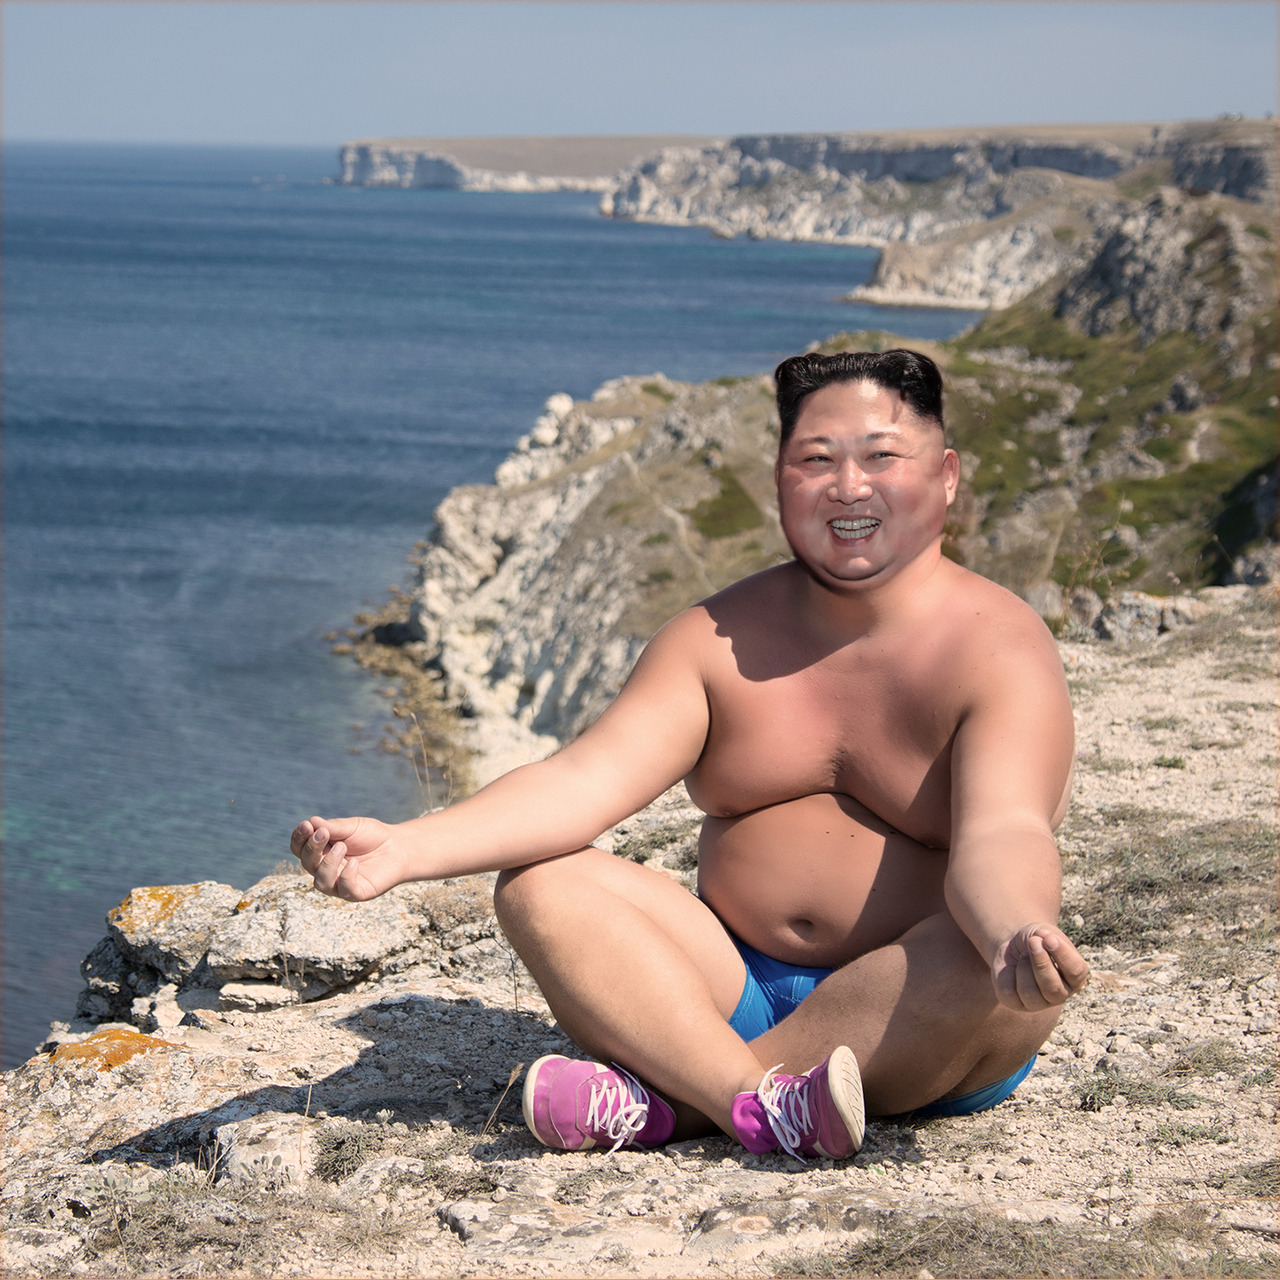 le tweet de Kim Jong-un de Biarritz : merci la France - Bretzel liquide,  humour noir, propos et photos étranges